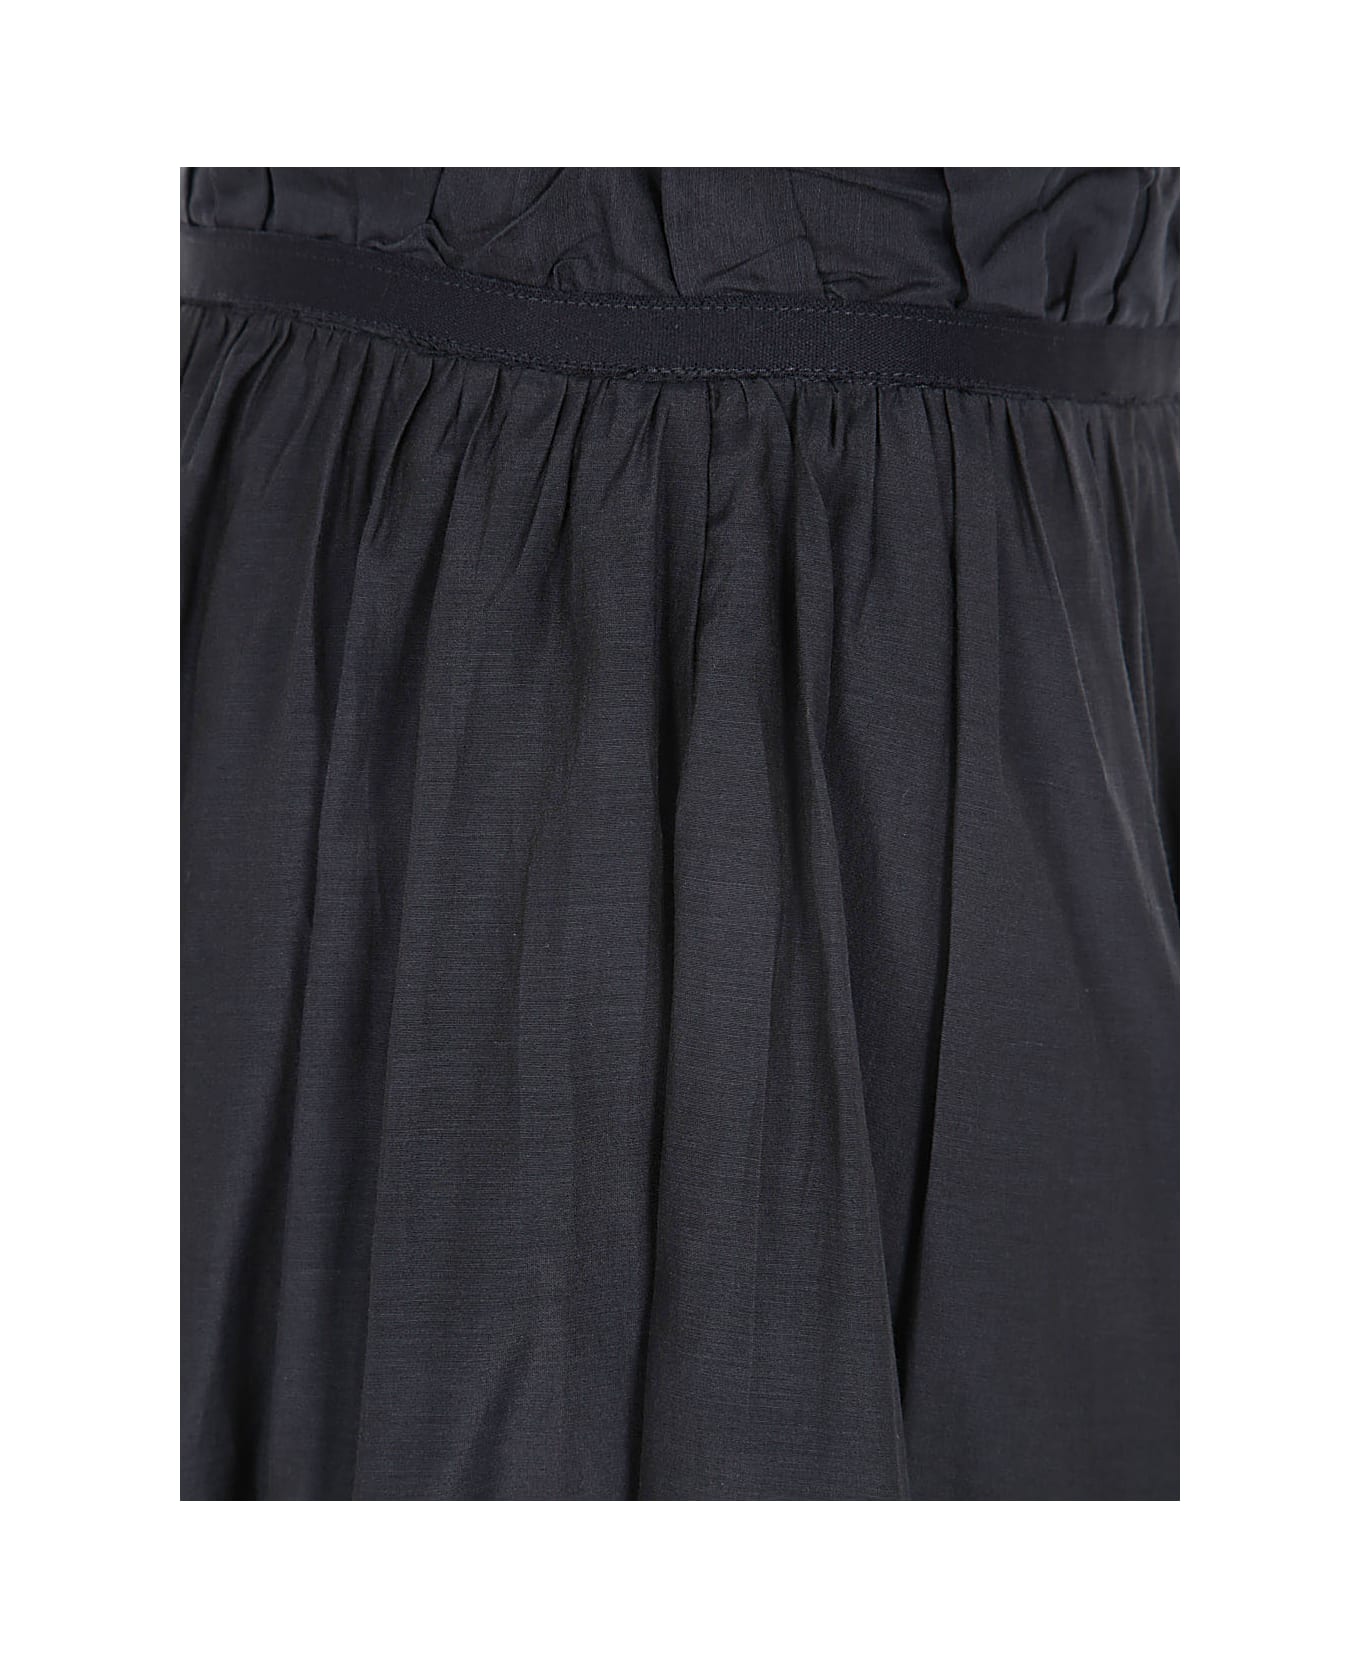 Seventy Long Skirt - Black